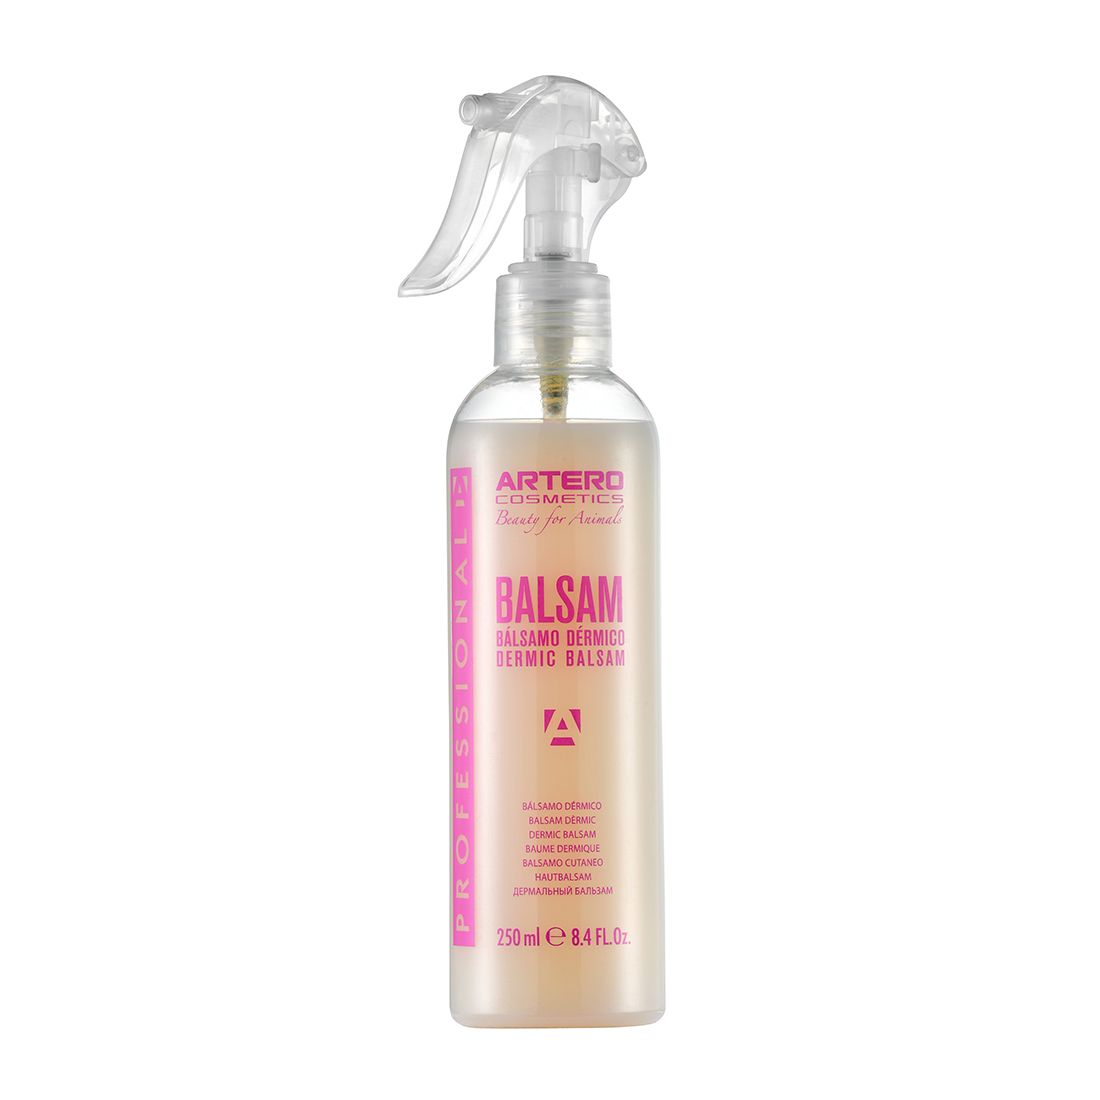 Artero Spray Balsam 250ml en Las Palmas de Gran Canaria